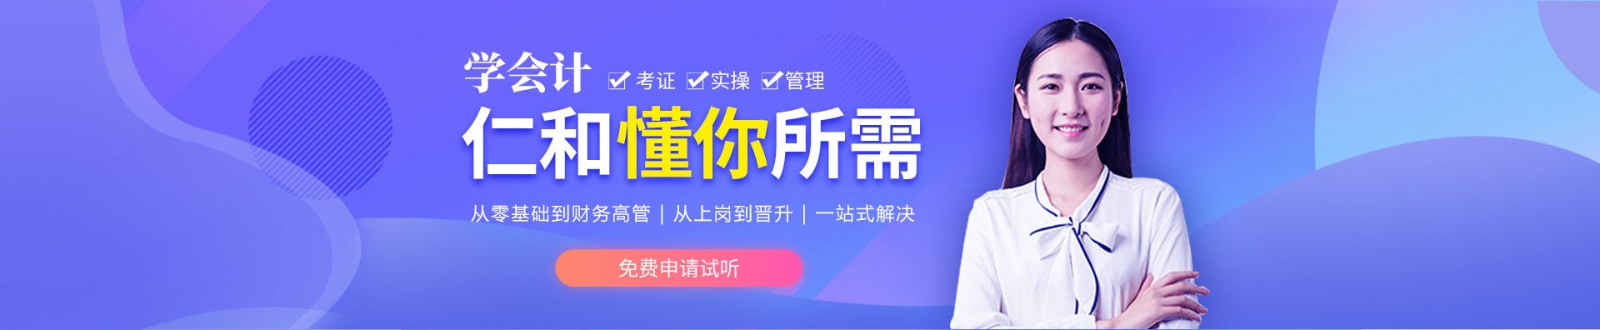 杭州仁和会计培训学校 横幅广告